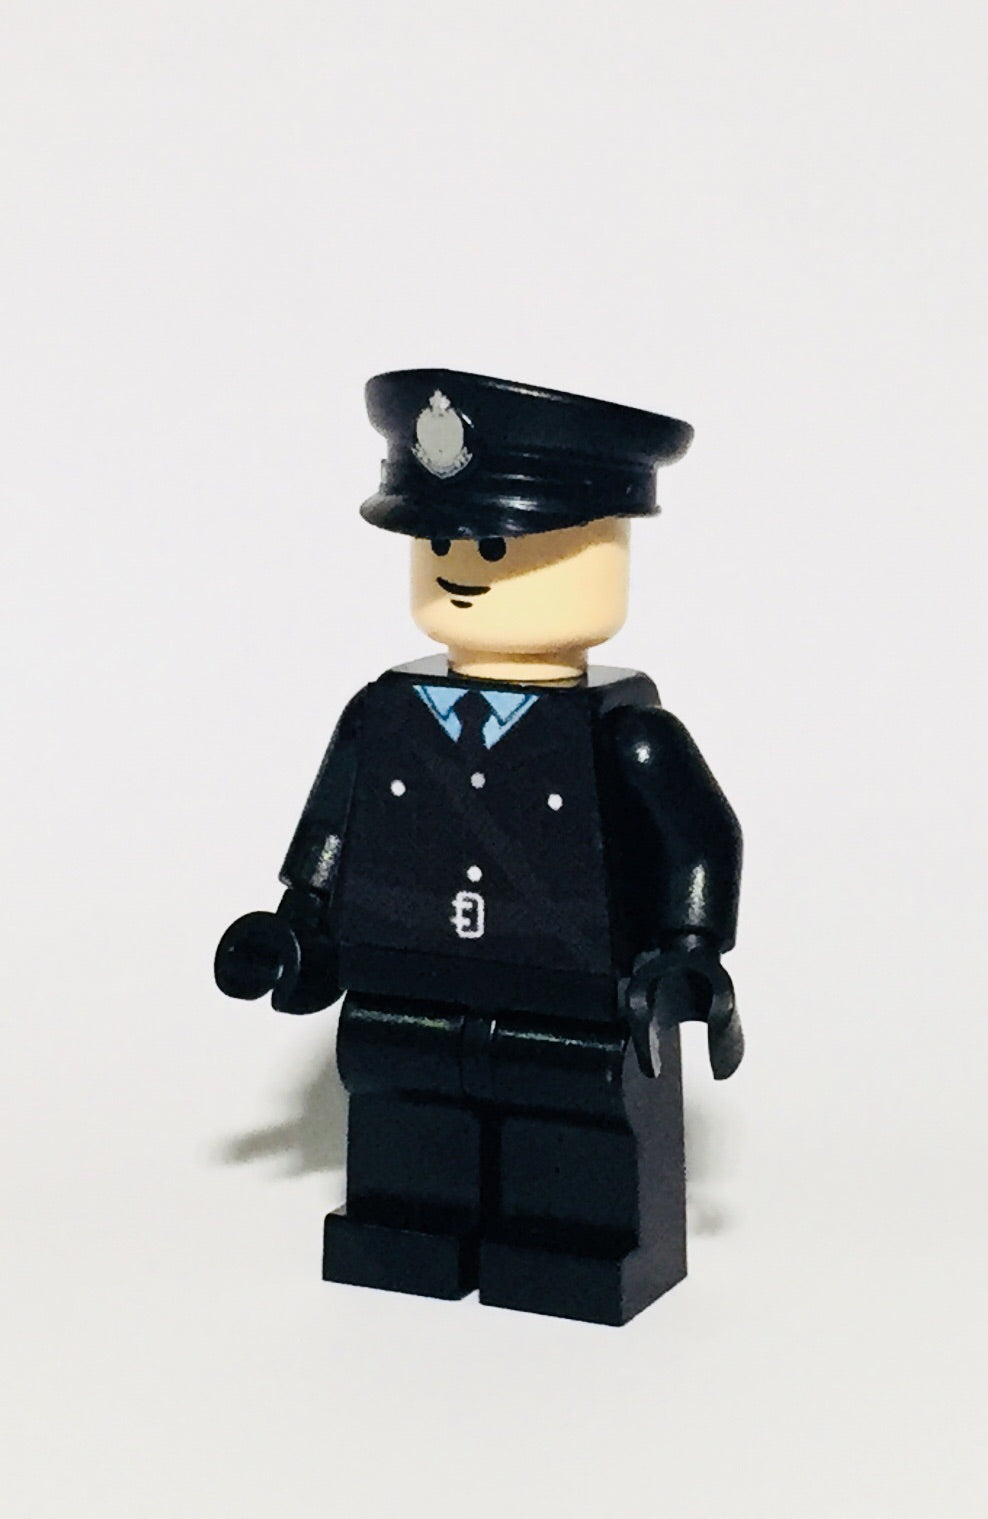 Police Ceremonial uniform